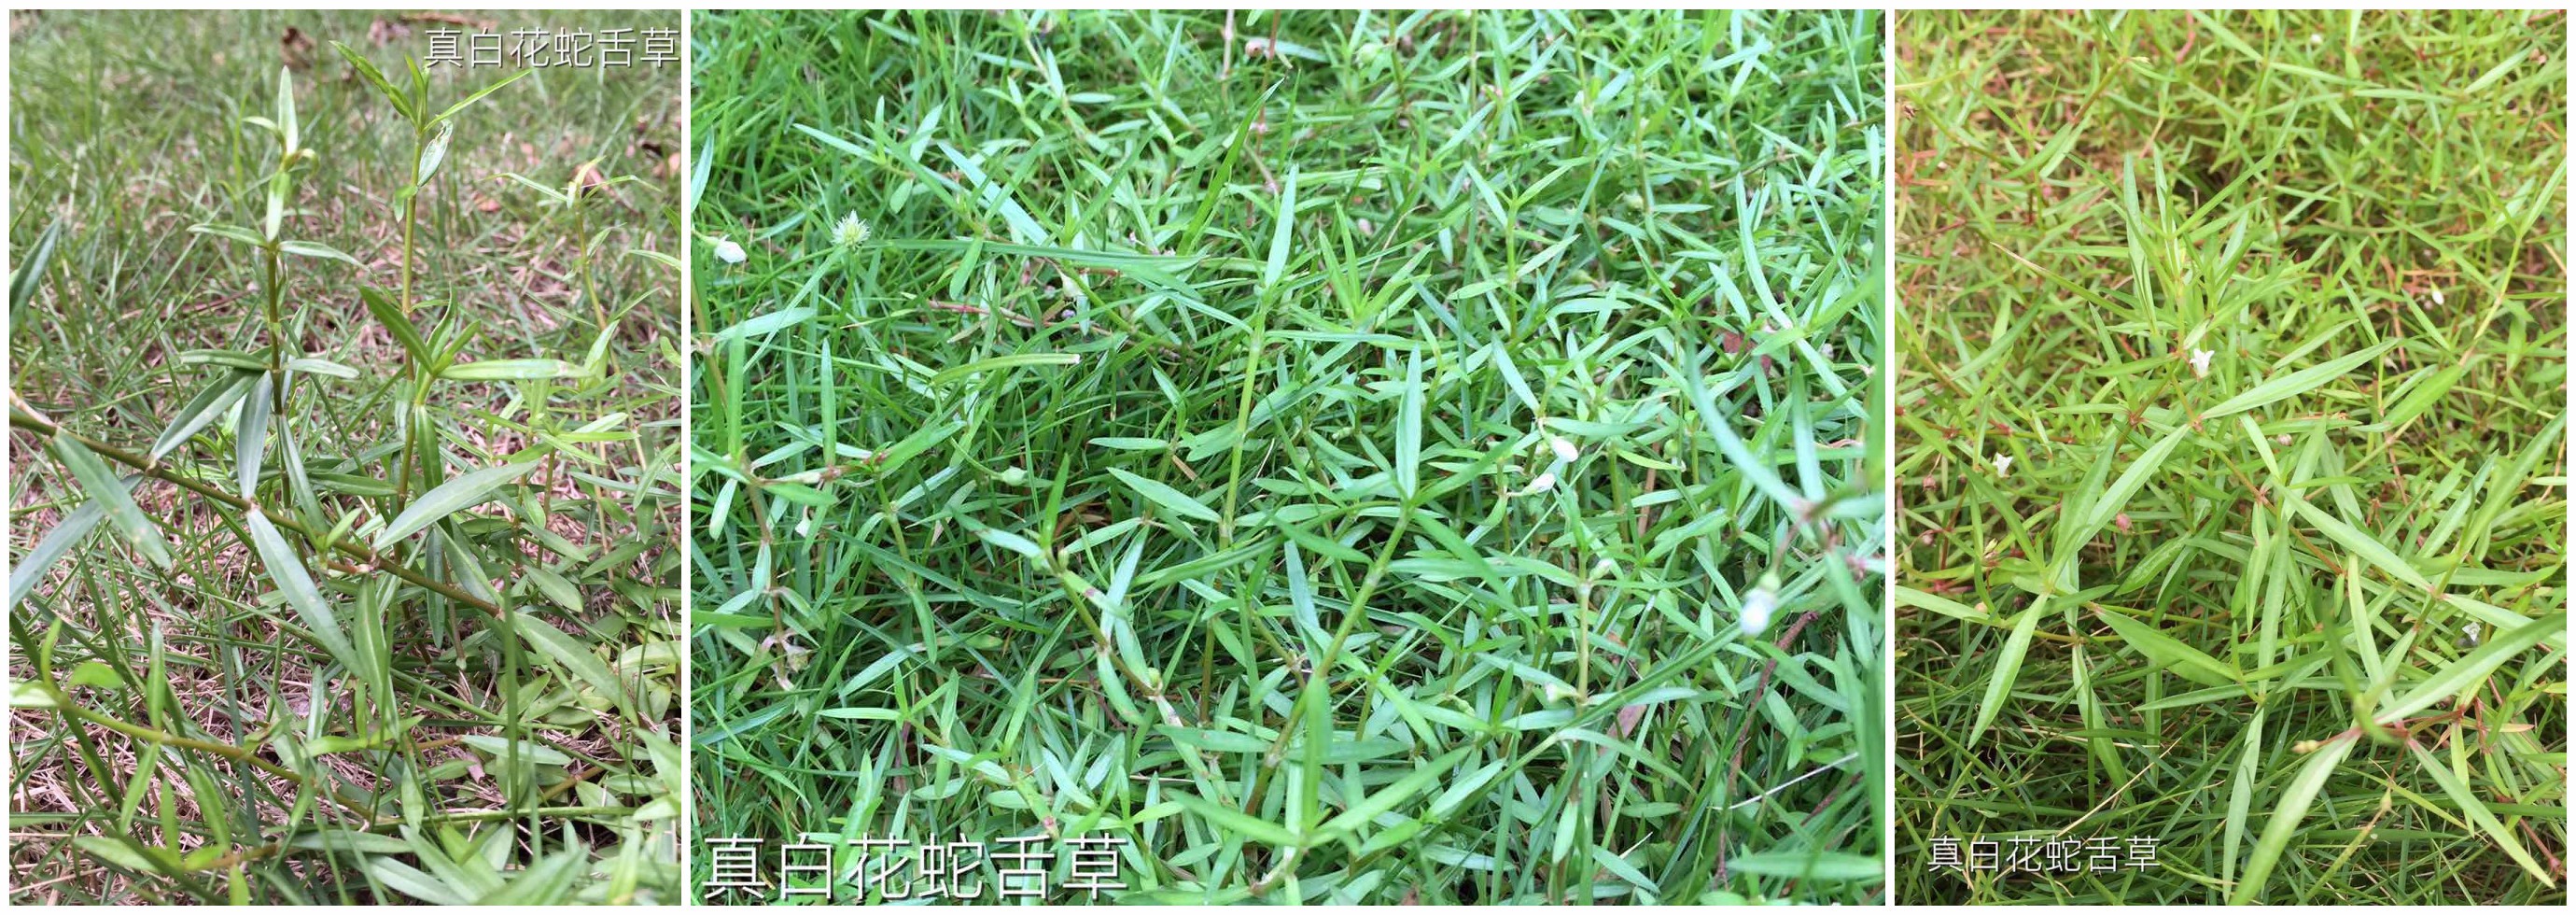 假白花蛇舌草(即水线草,伞房耳草):叶片较为阔,花5~6 朵生于叶腋.